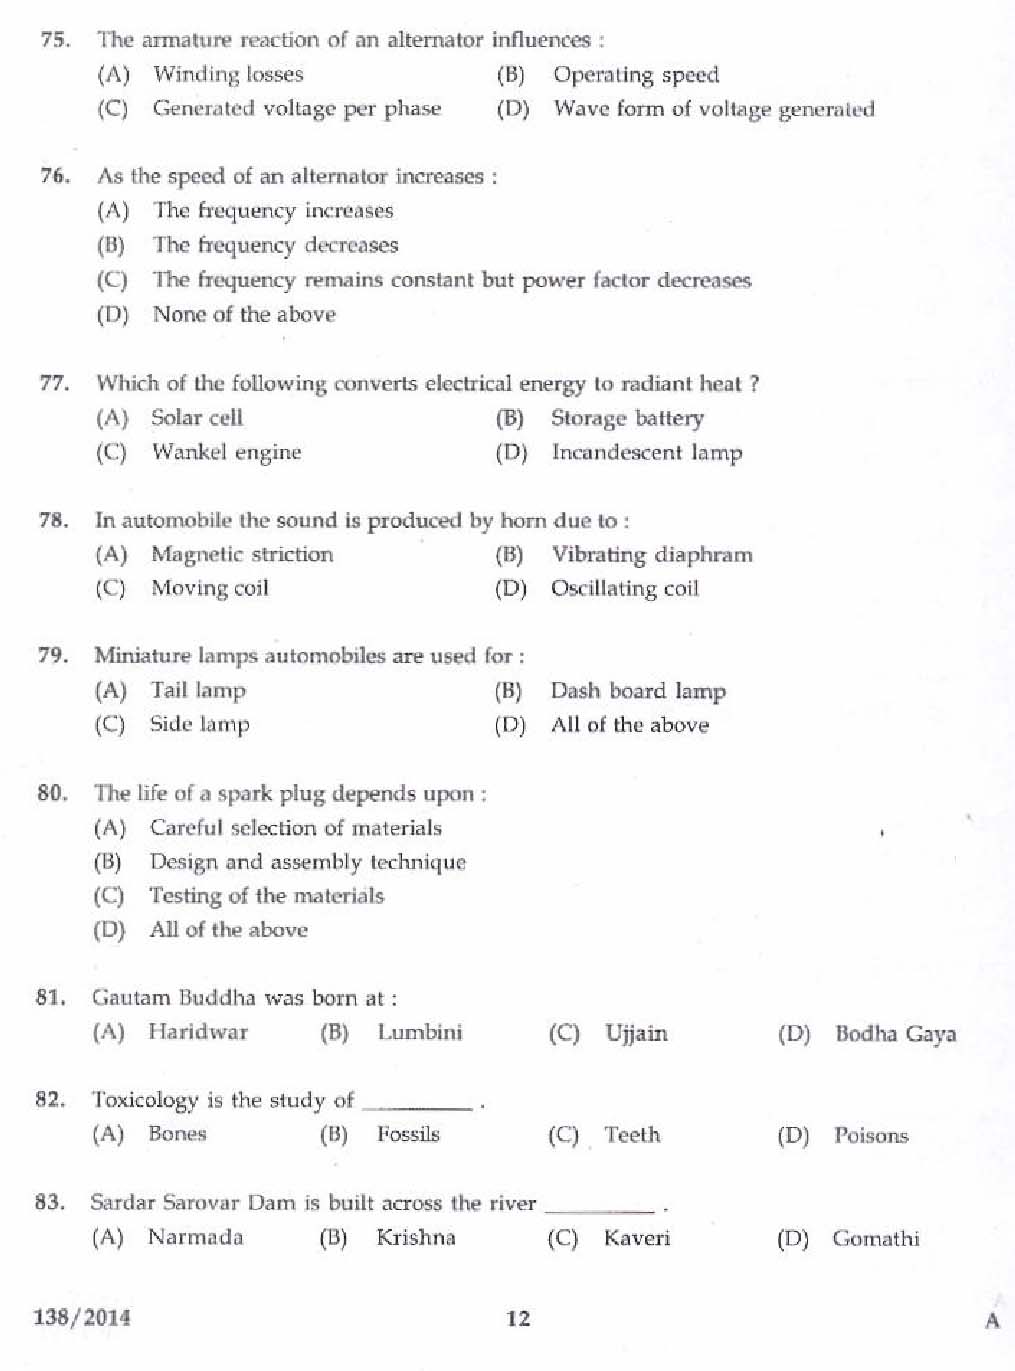 Kerala PSC Junior Instructor Exam Question Paper Code 1382014 10